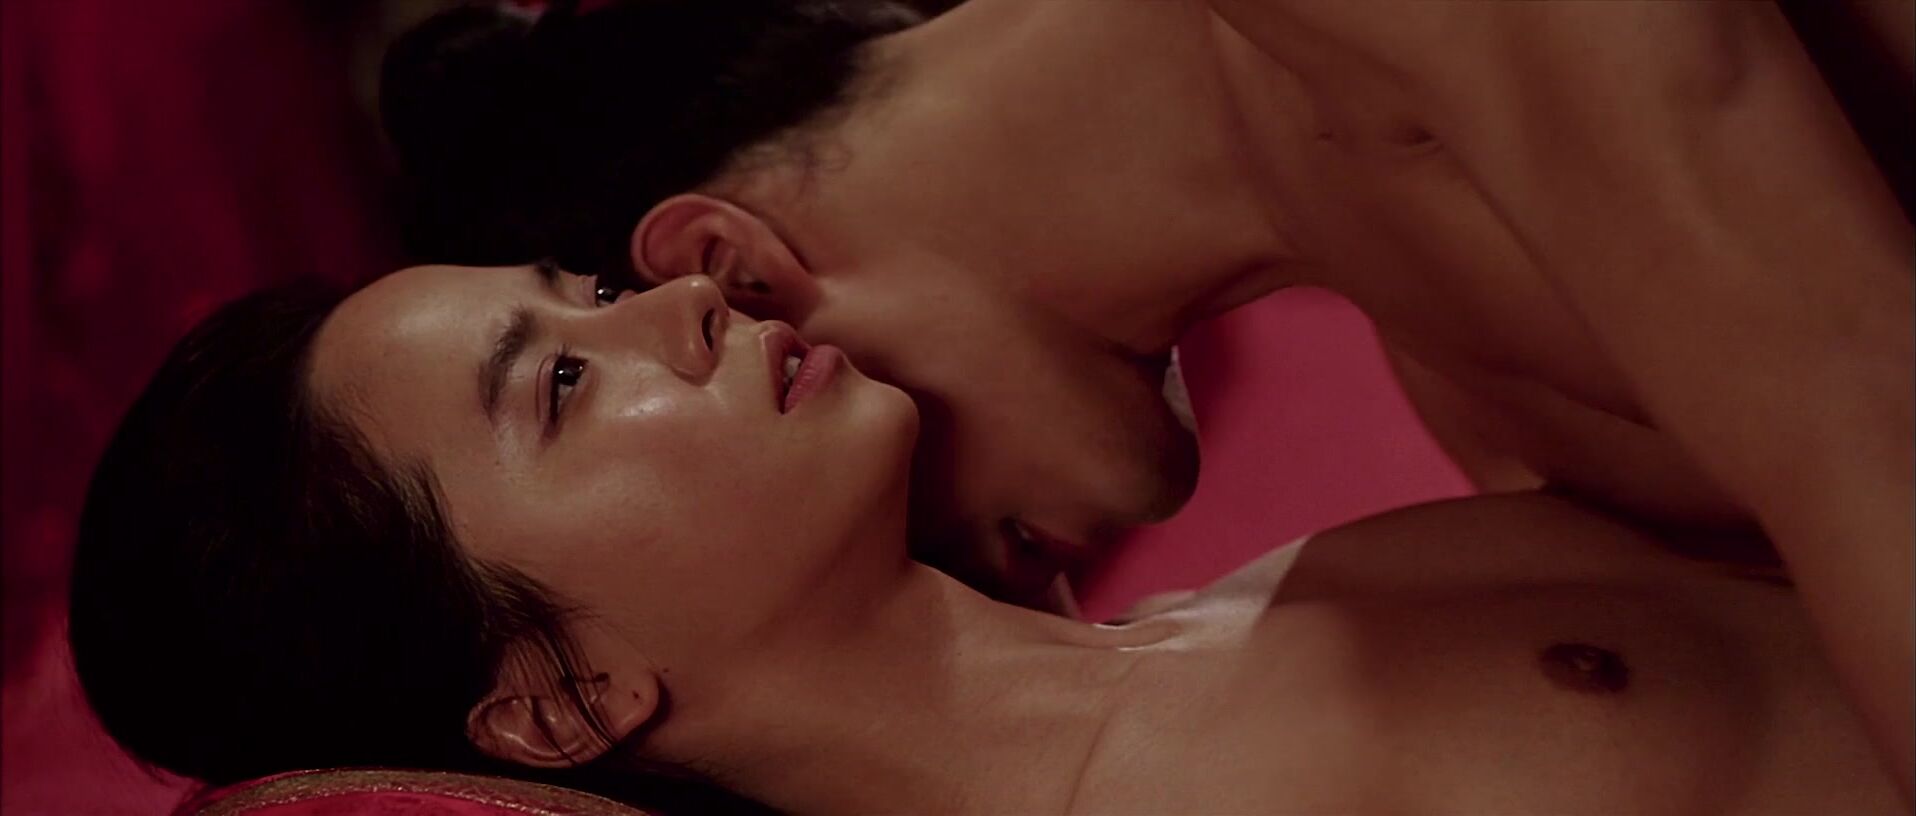 1916px x 816px - A Frozen Flower movie sex scene starring Song Ji-hyo nude in role of the  queen (2008) Video Â» Best Sexy Scene Â» HeroEro Tube